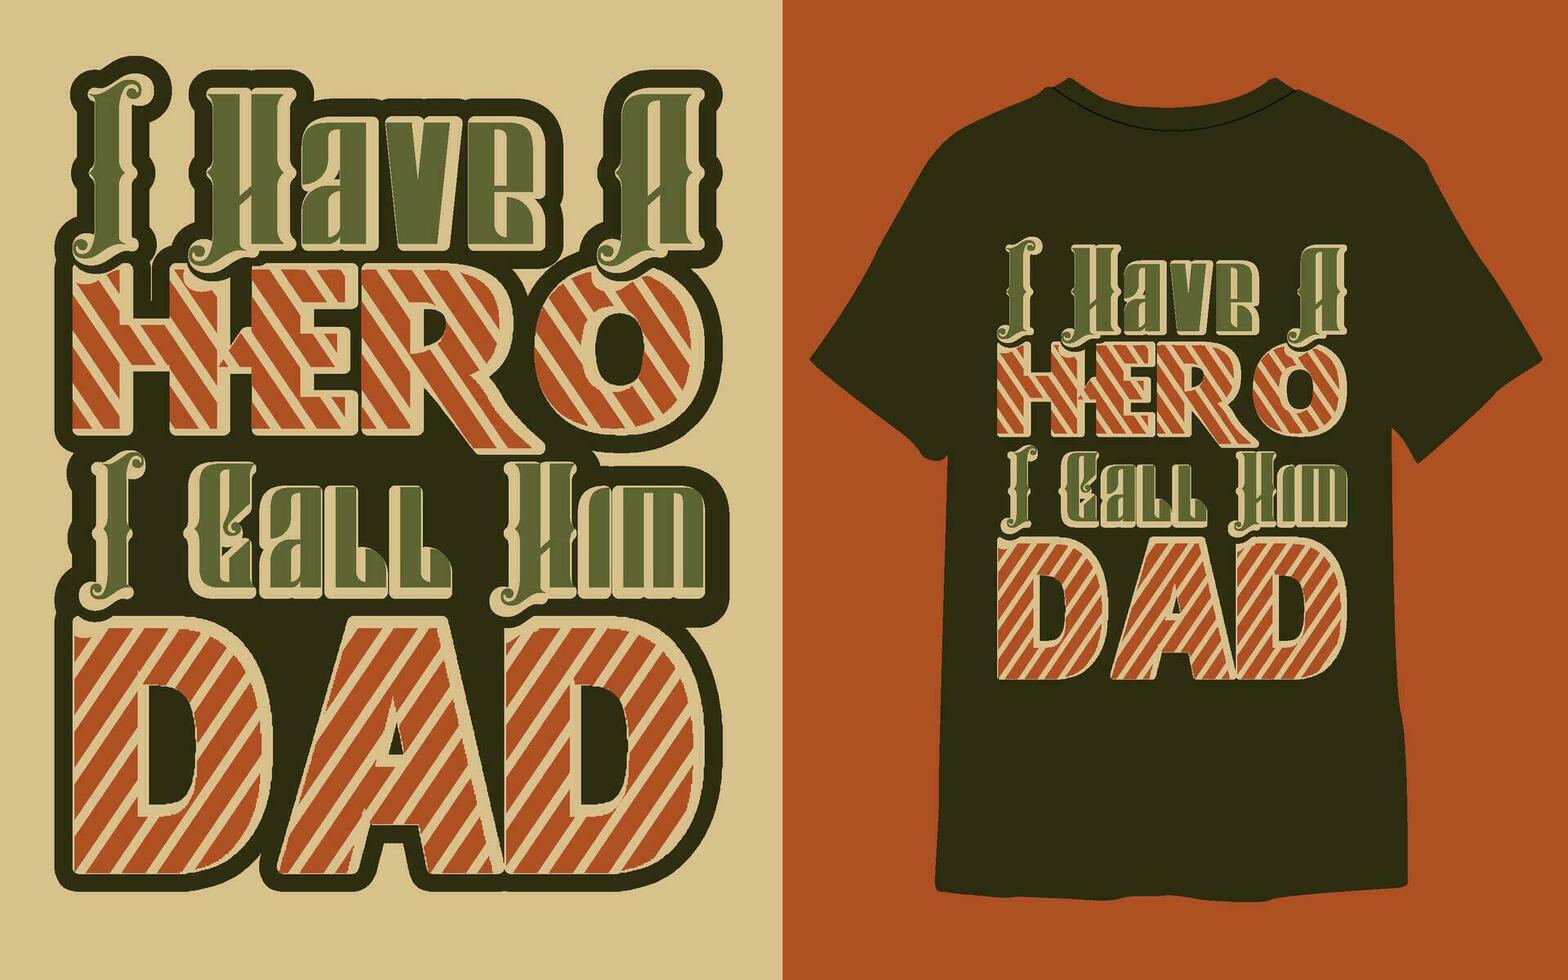 vintage tipografia do pai dia camiseta projeto, Papai e criança amor camiseta Projeto. vetor